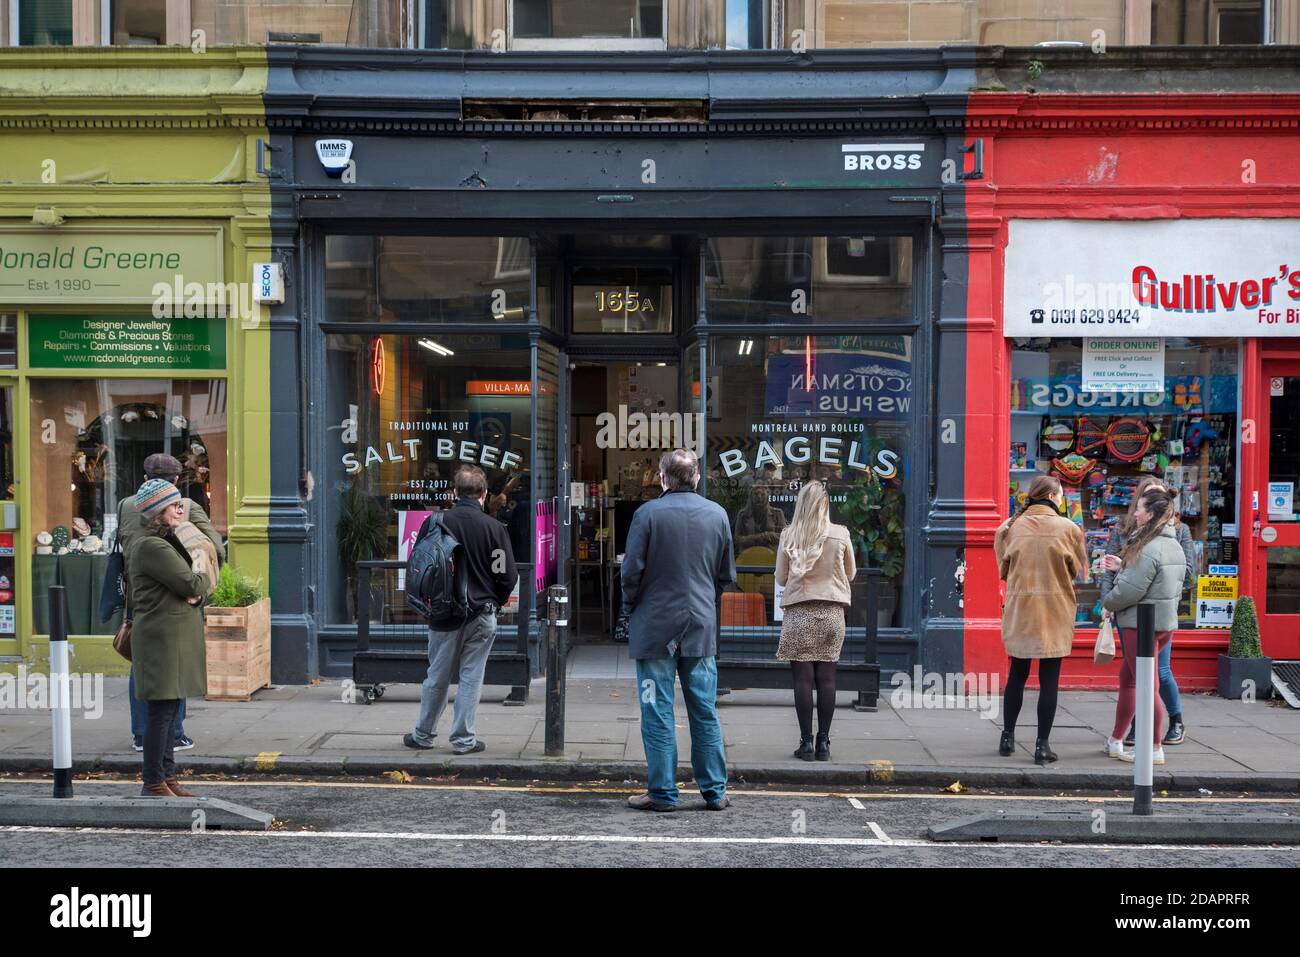 File d'attente socialement distancée pendant la pandémie du coronavirus devant un magasin de bagels à Bruntsfield, Édimbourg, Écosse, Royaume-Uni. Banque D'Images